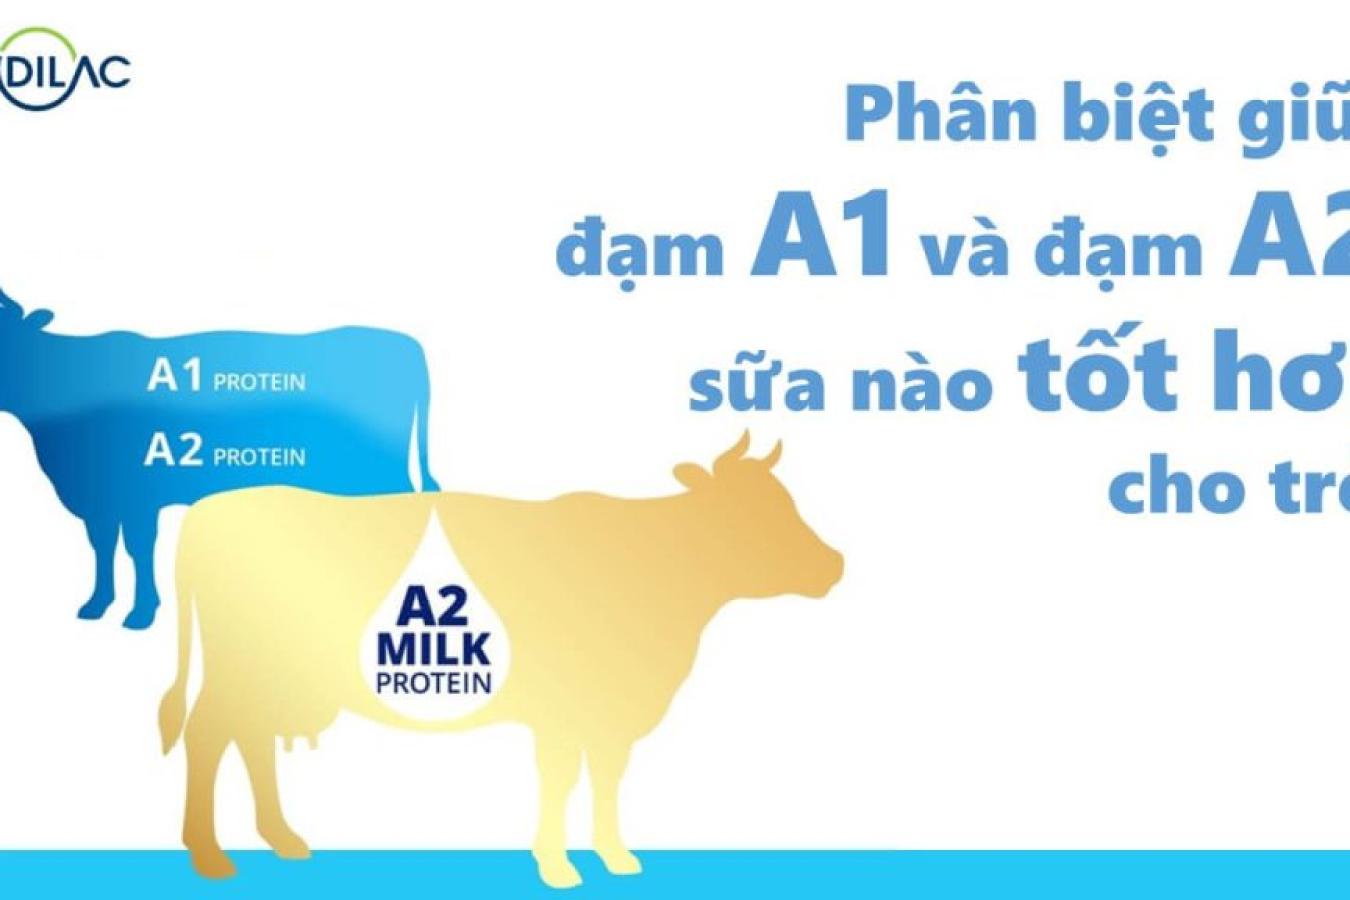 Phân biệt giữa đạm A1 và đạm A2, sữa nào tốt hơn cho trẻ?